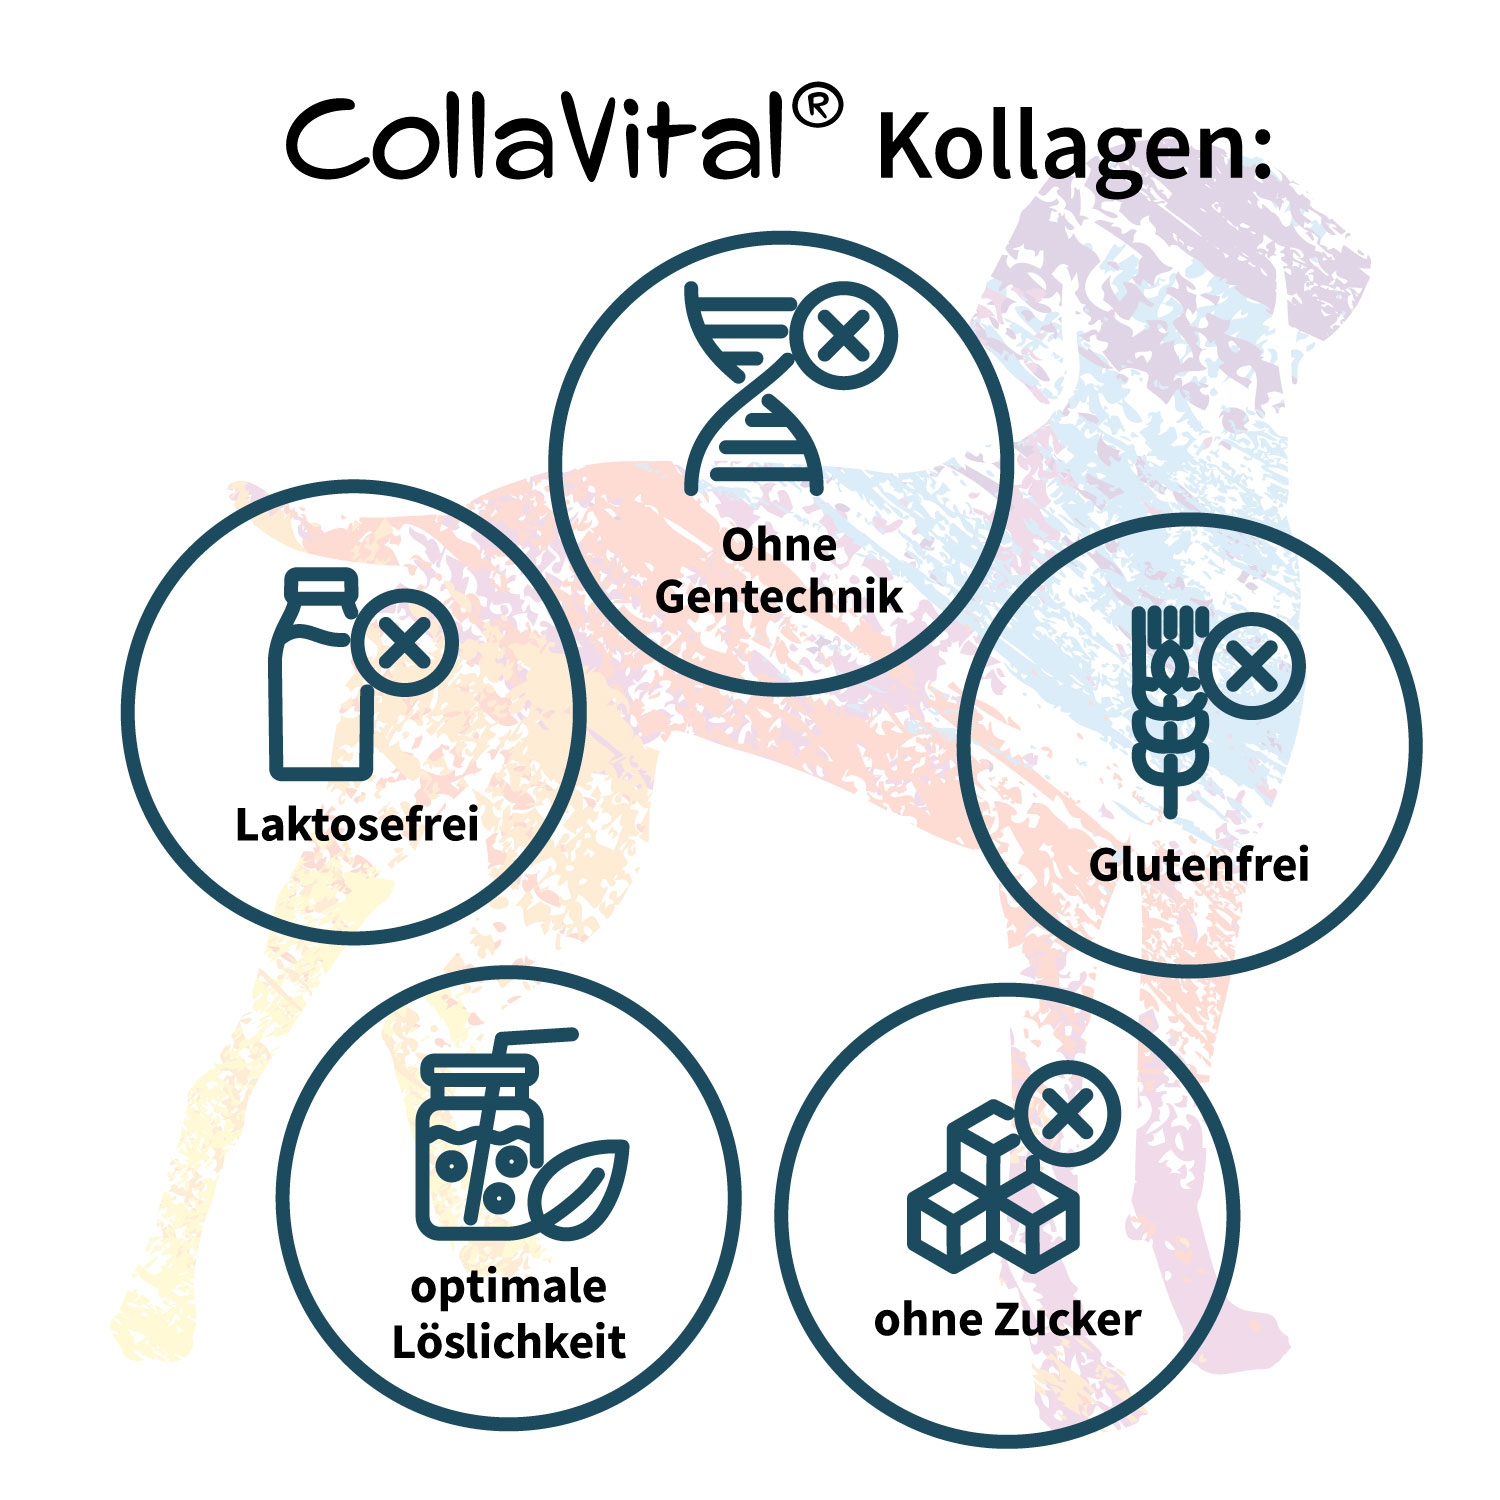 6 x Collavital® DOG Collagen Pulver [230g] – Bioaktives Kollagen Hydrolysat